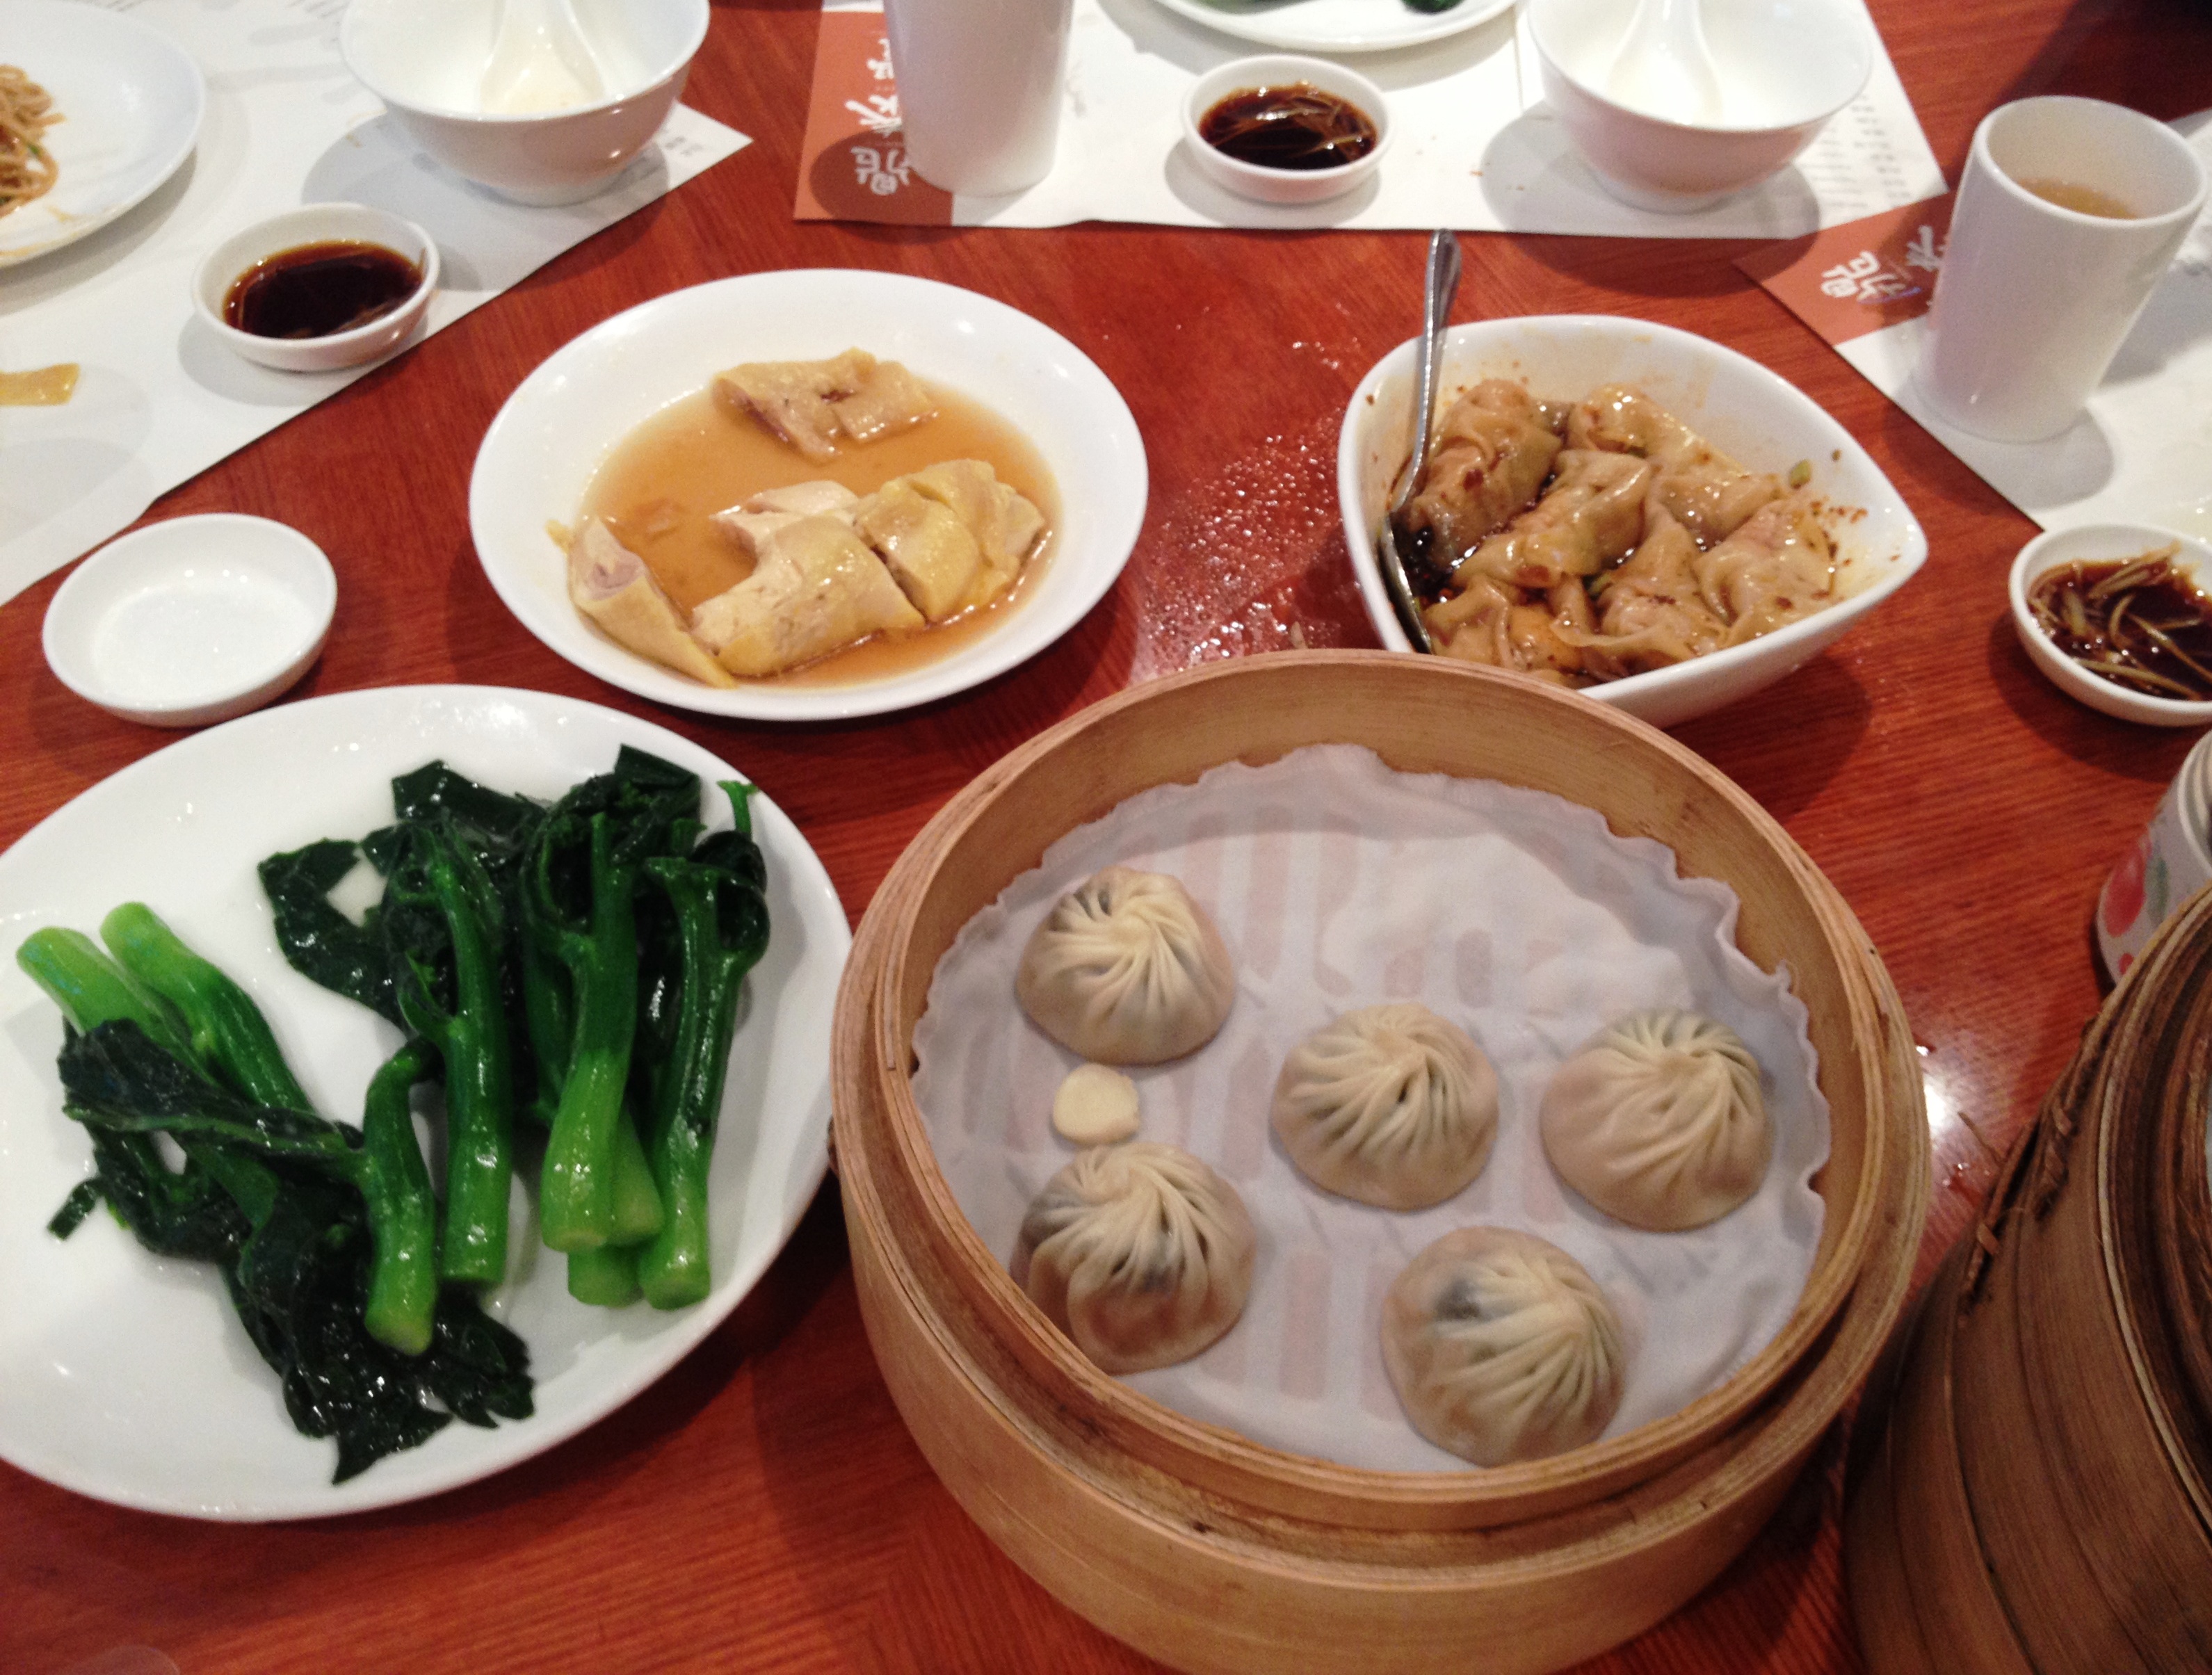 Dumplings at Din Tai Fung.JPG